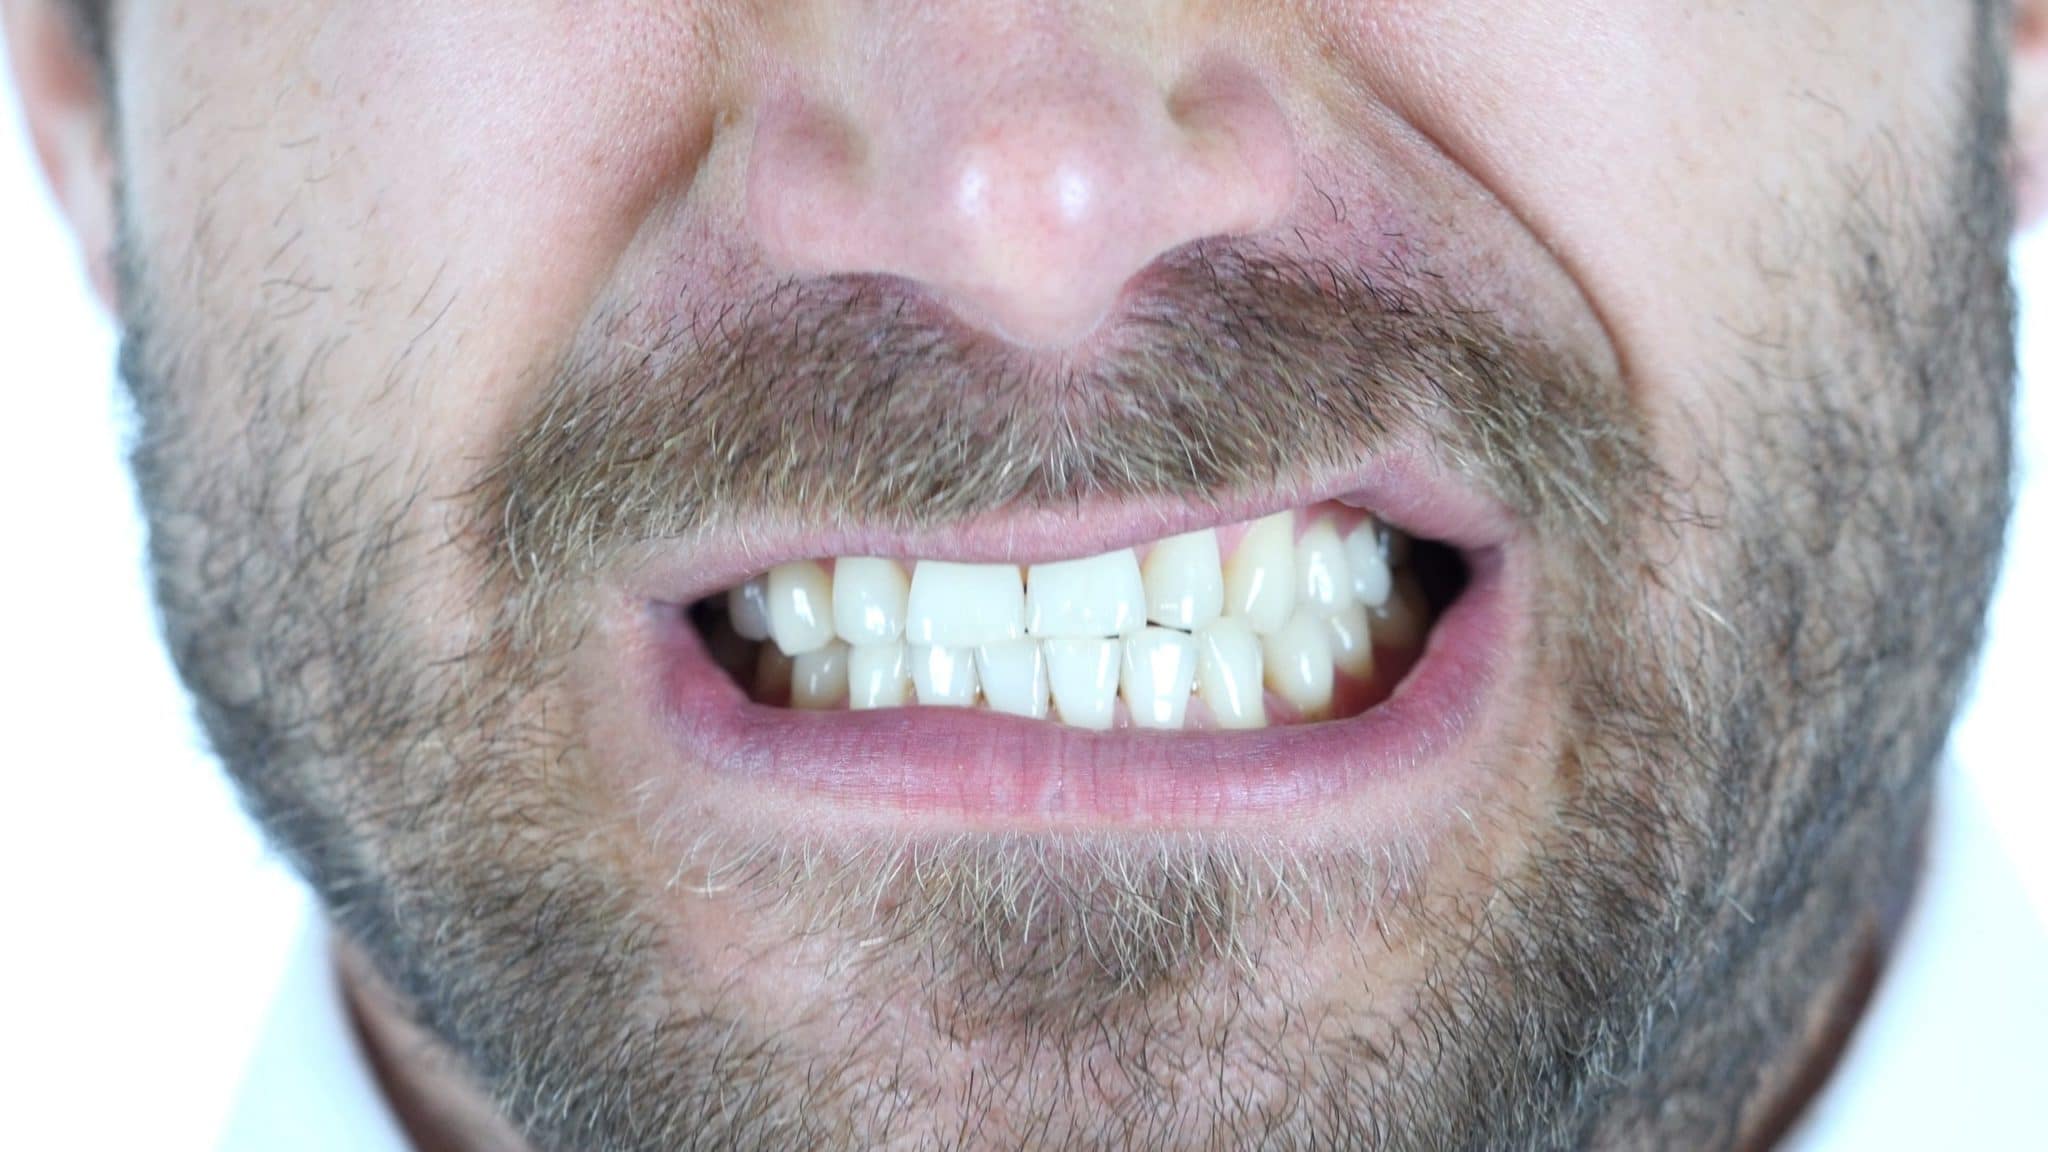 bruksizm, jak powstrzymać zgrzytanie zębami, & ból orofacjalny featured image